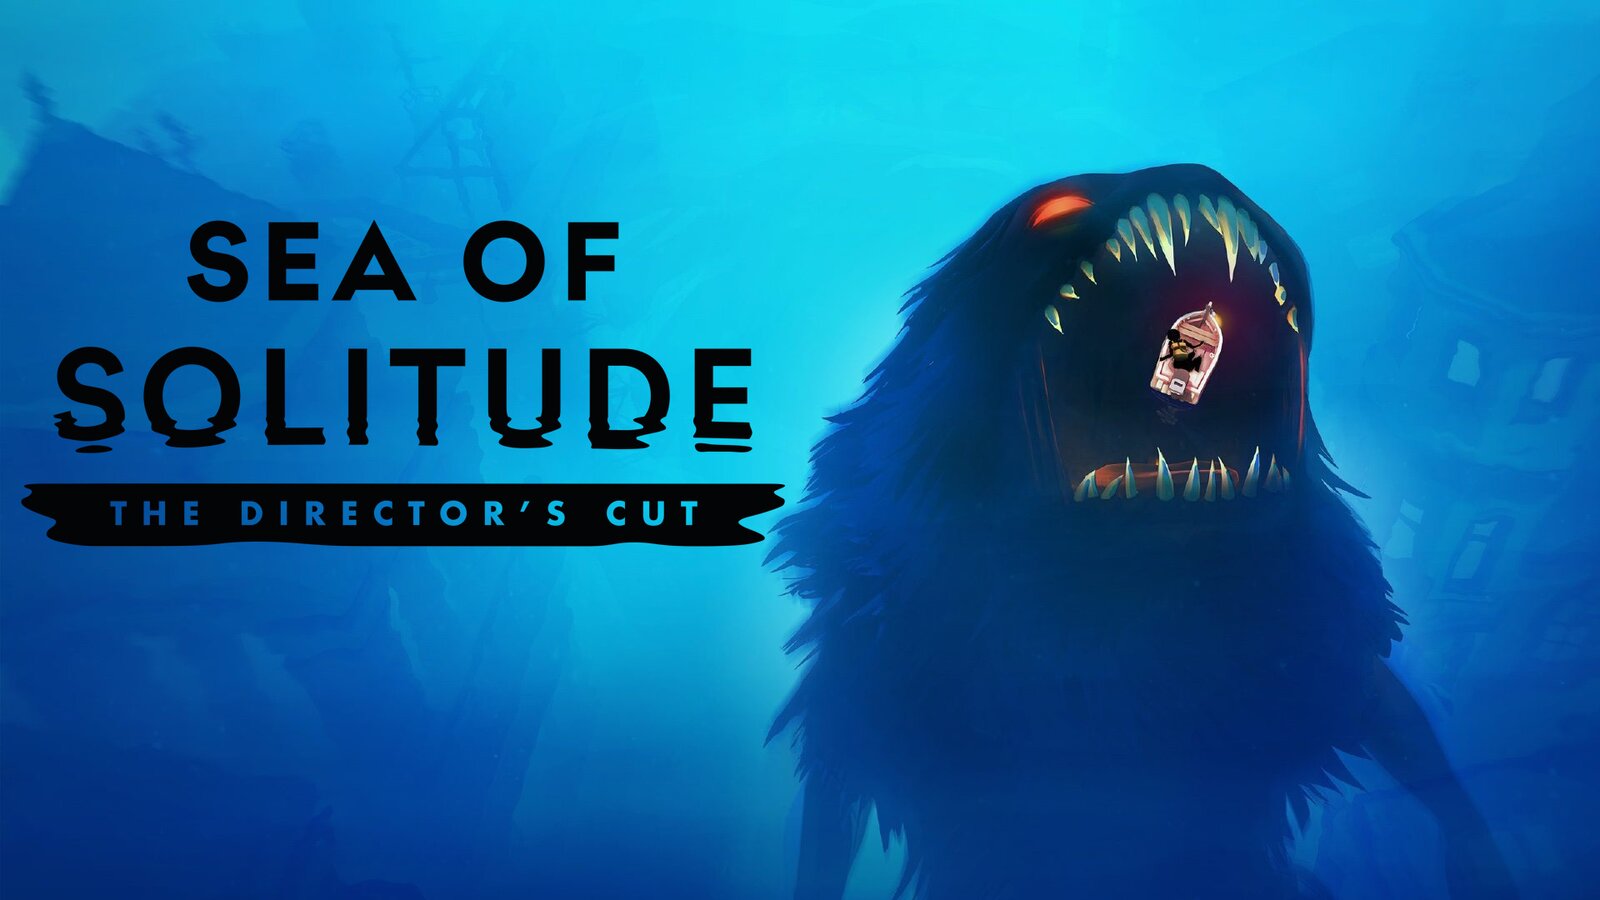 Sea of Solitude: The Director’s Cut